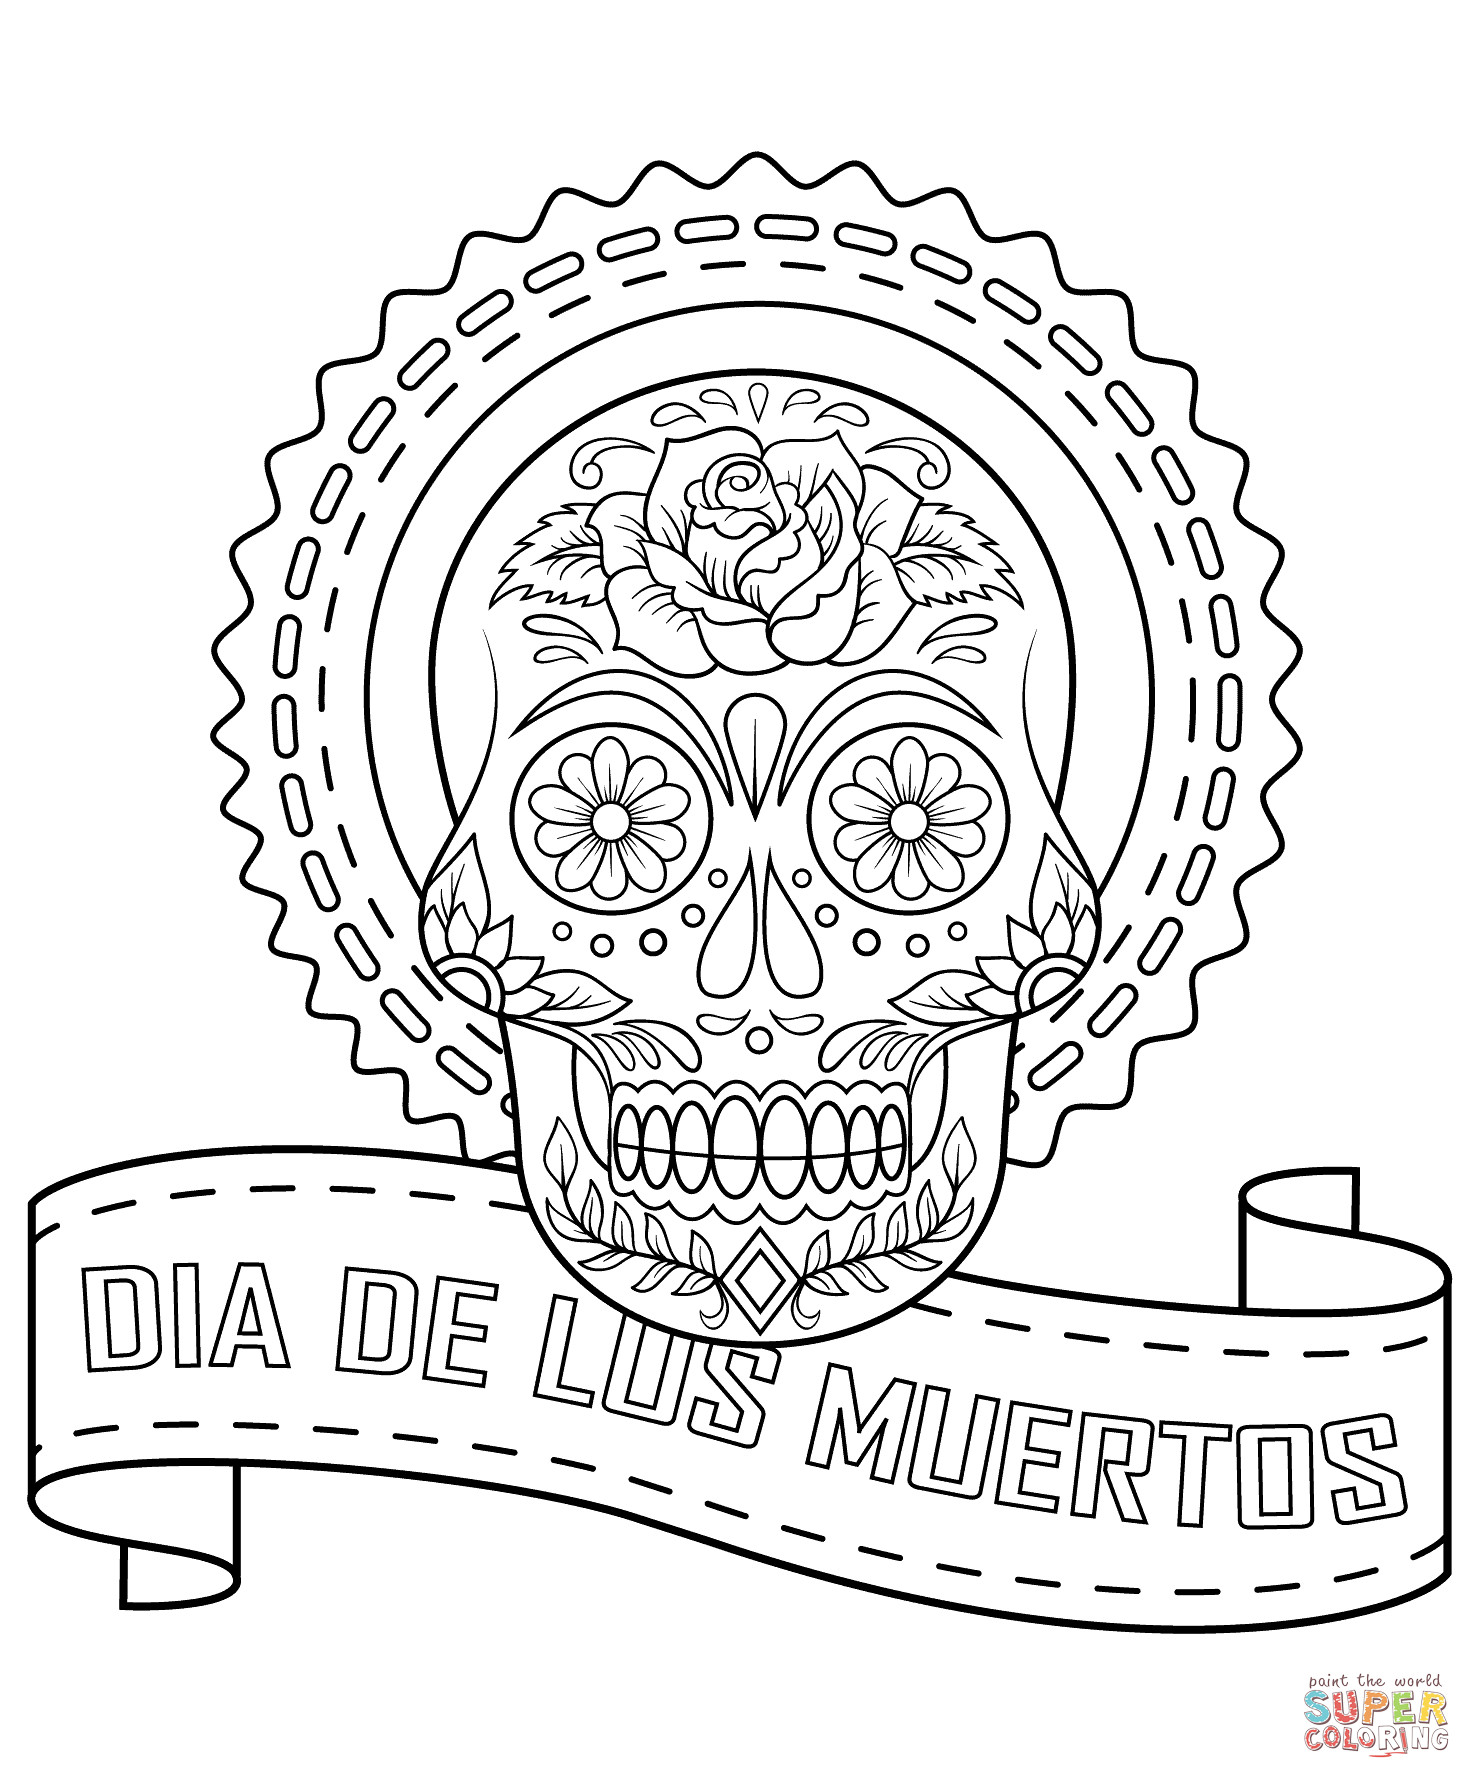 Best ideas about Dia De Los Muertos Coloring Book
. Save or Pin Dia De Los Muertos Sugar Skull coloring page Now.